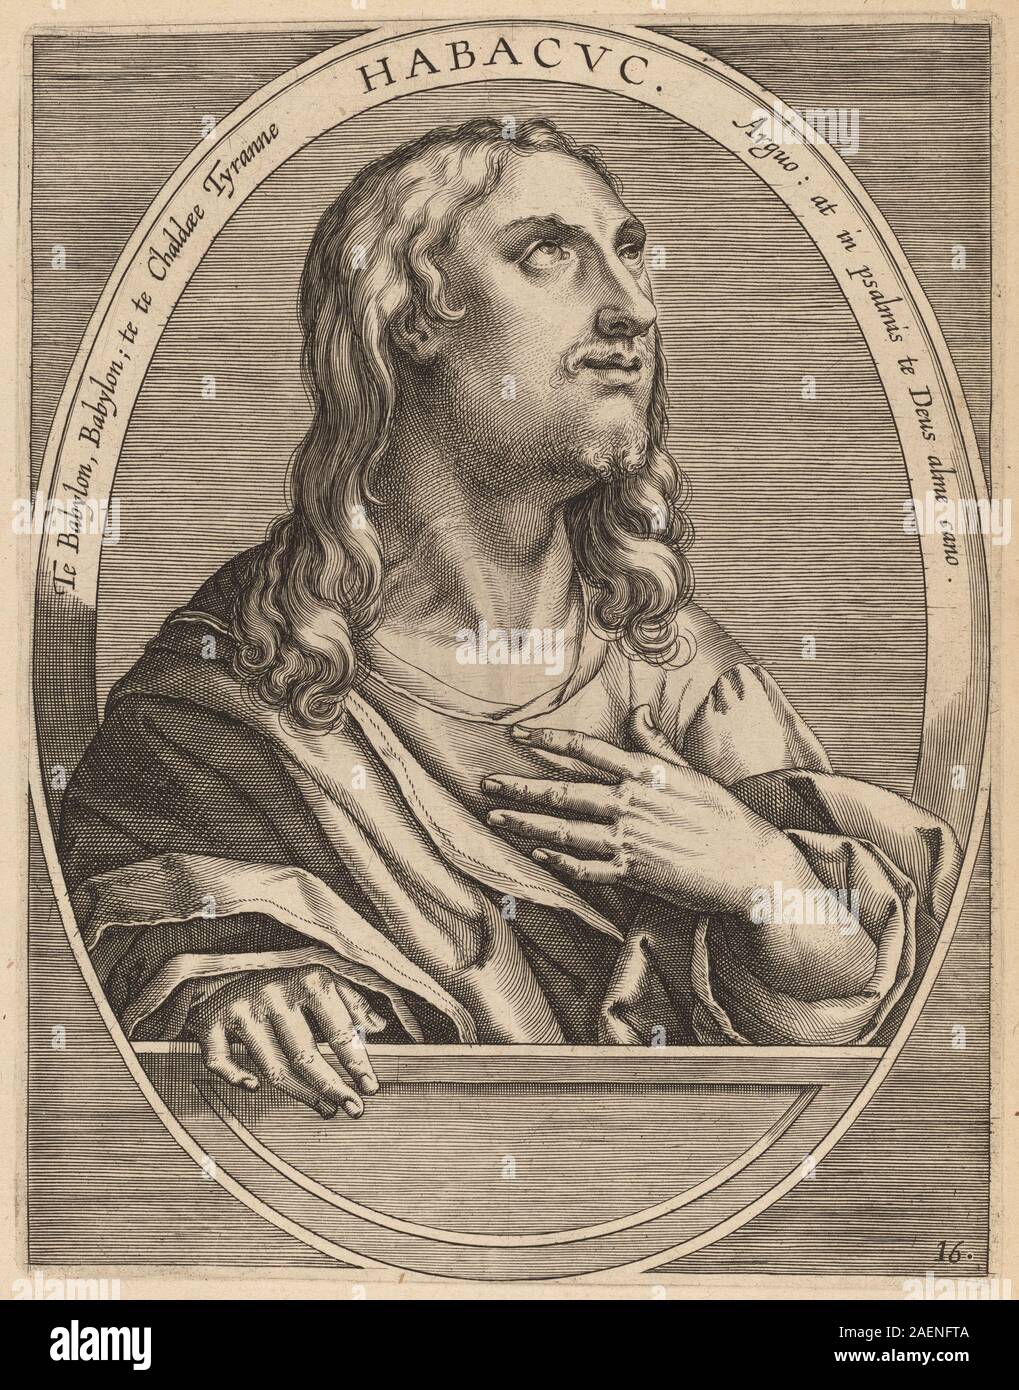 Theodor Galle after Jan van der Straet, Habachuch, published 1613, Habachuch; published 1613 Stock Photo